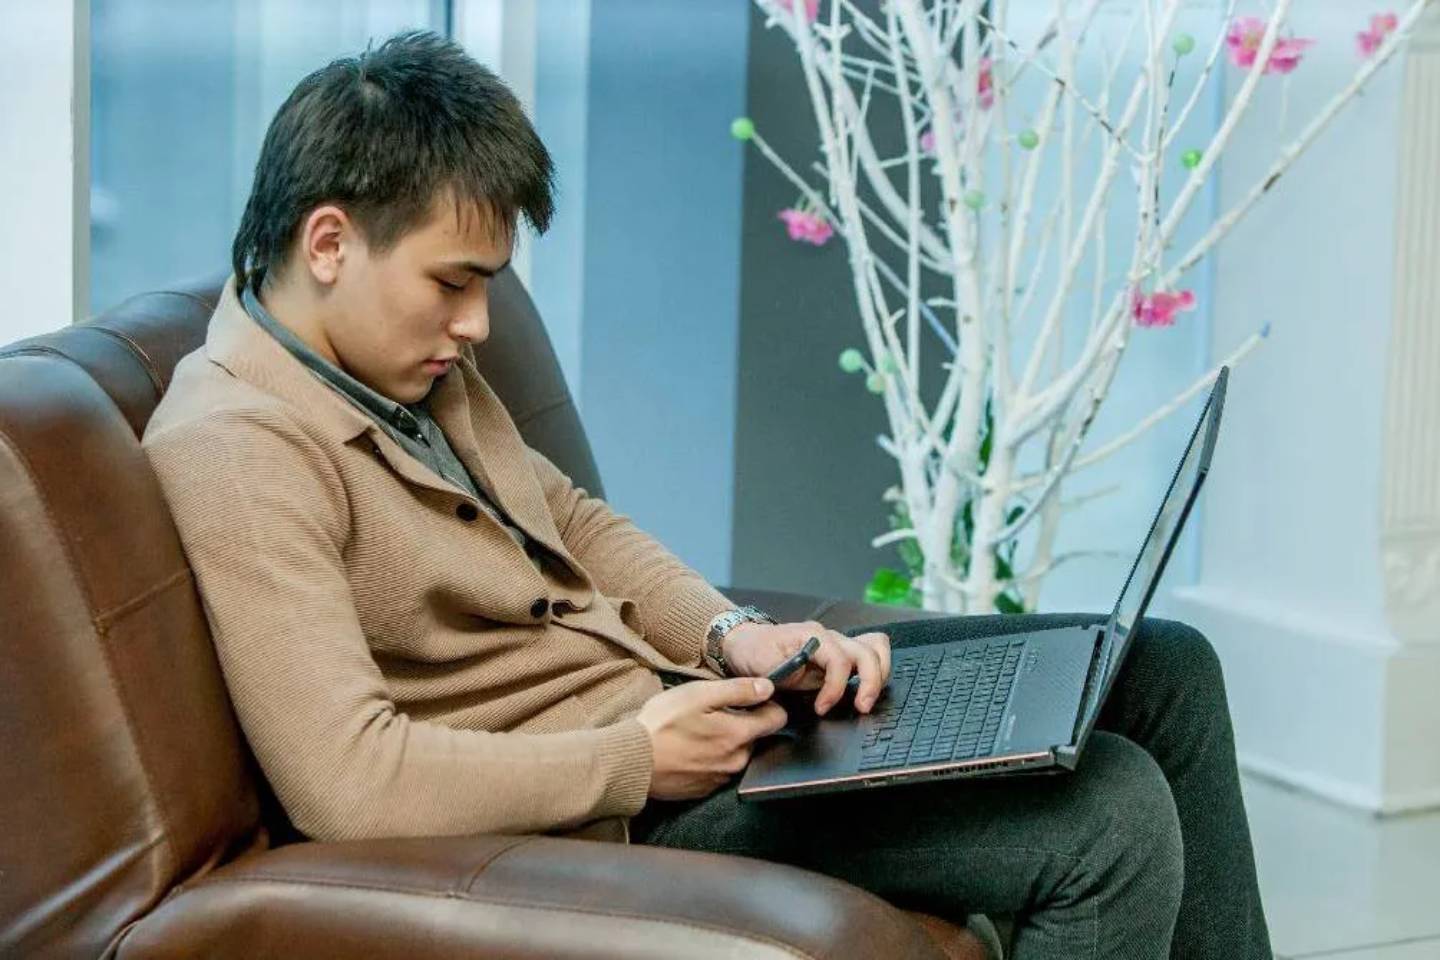 Новости Казахстана / Общество в Казахстане / Сколько было потрачено на IT-услуги в Казахстане